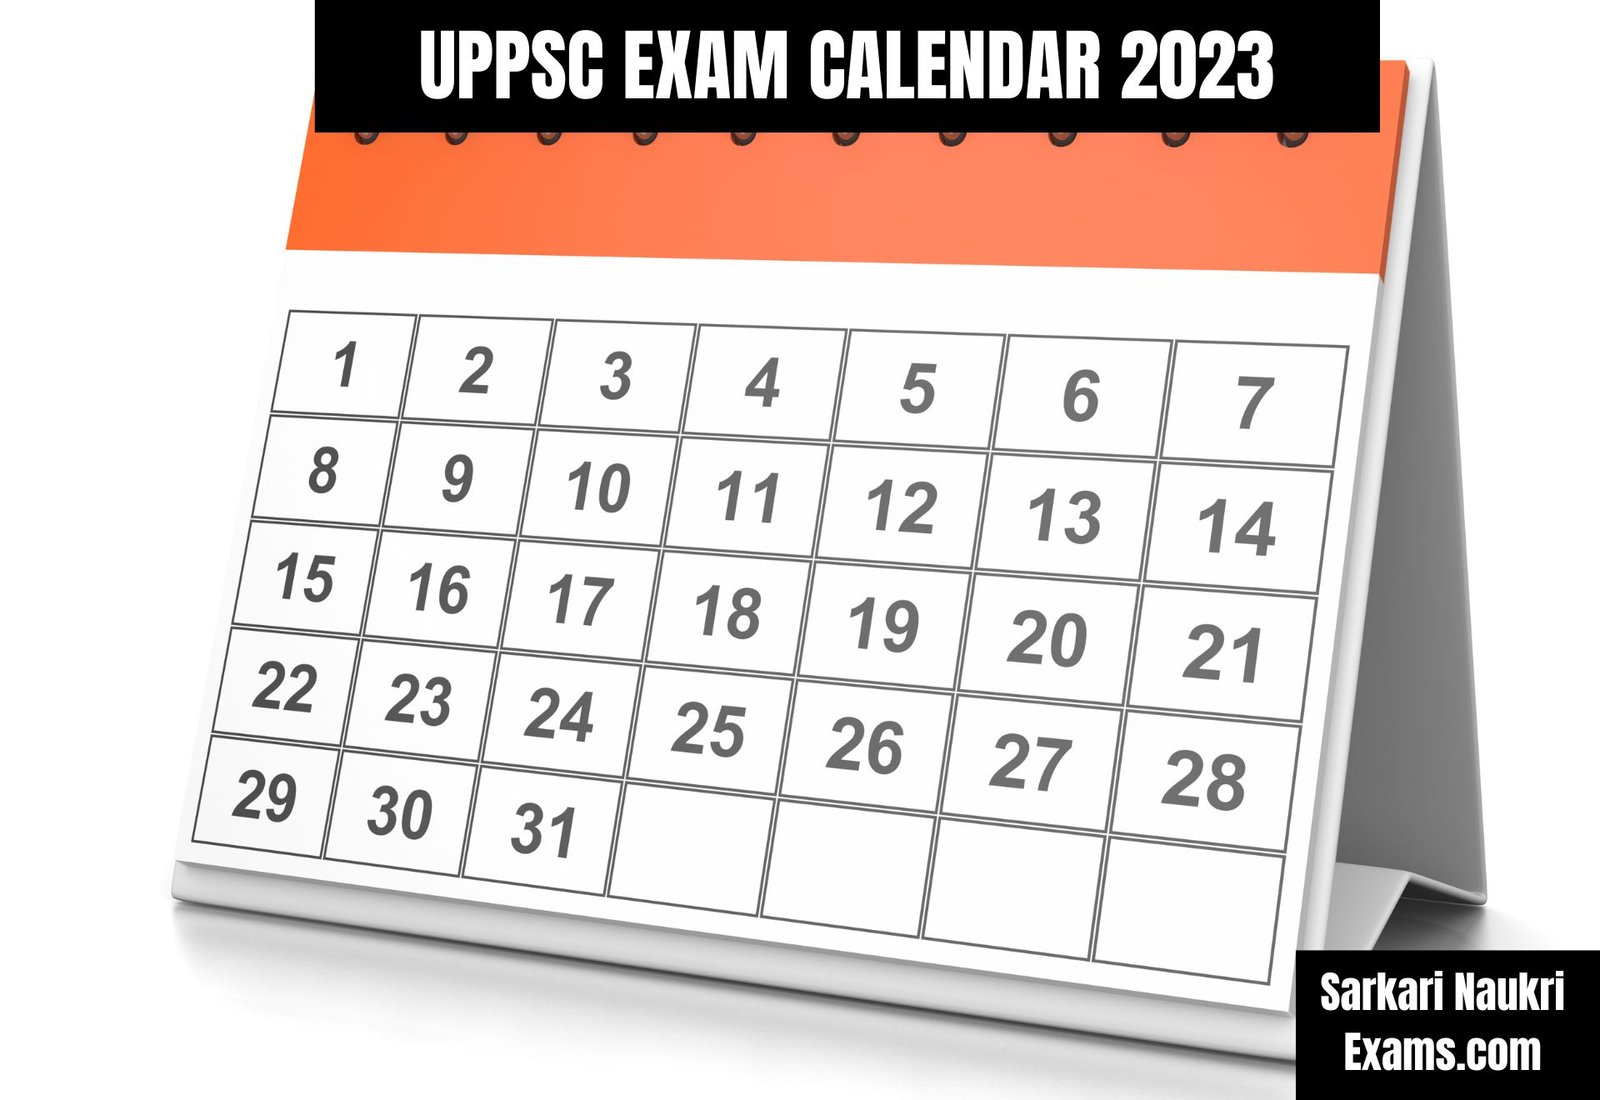 UPPSC Exam Calendar 2023 (OUT) | PDF Download